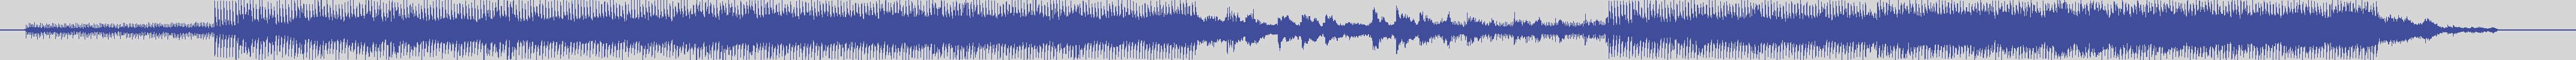 upr [UPR019] Adan, Ilse - Voice in Blue [Original Mix] audio wave form